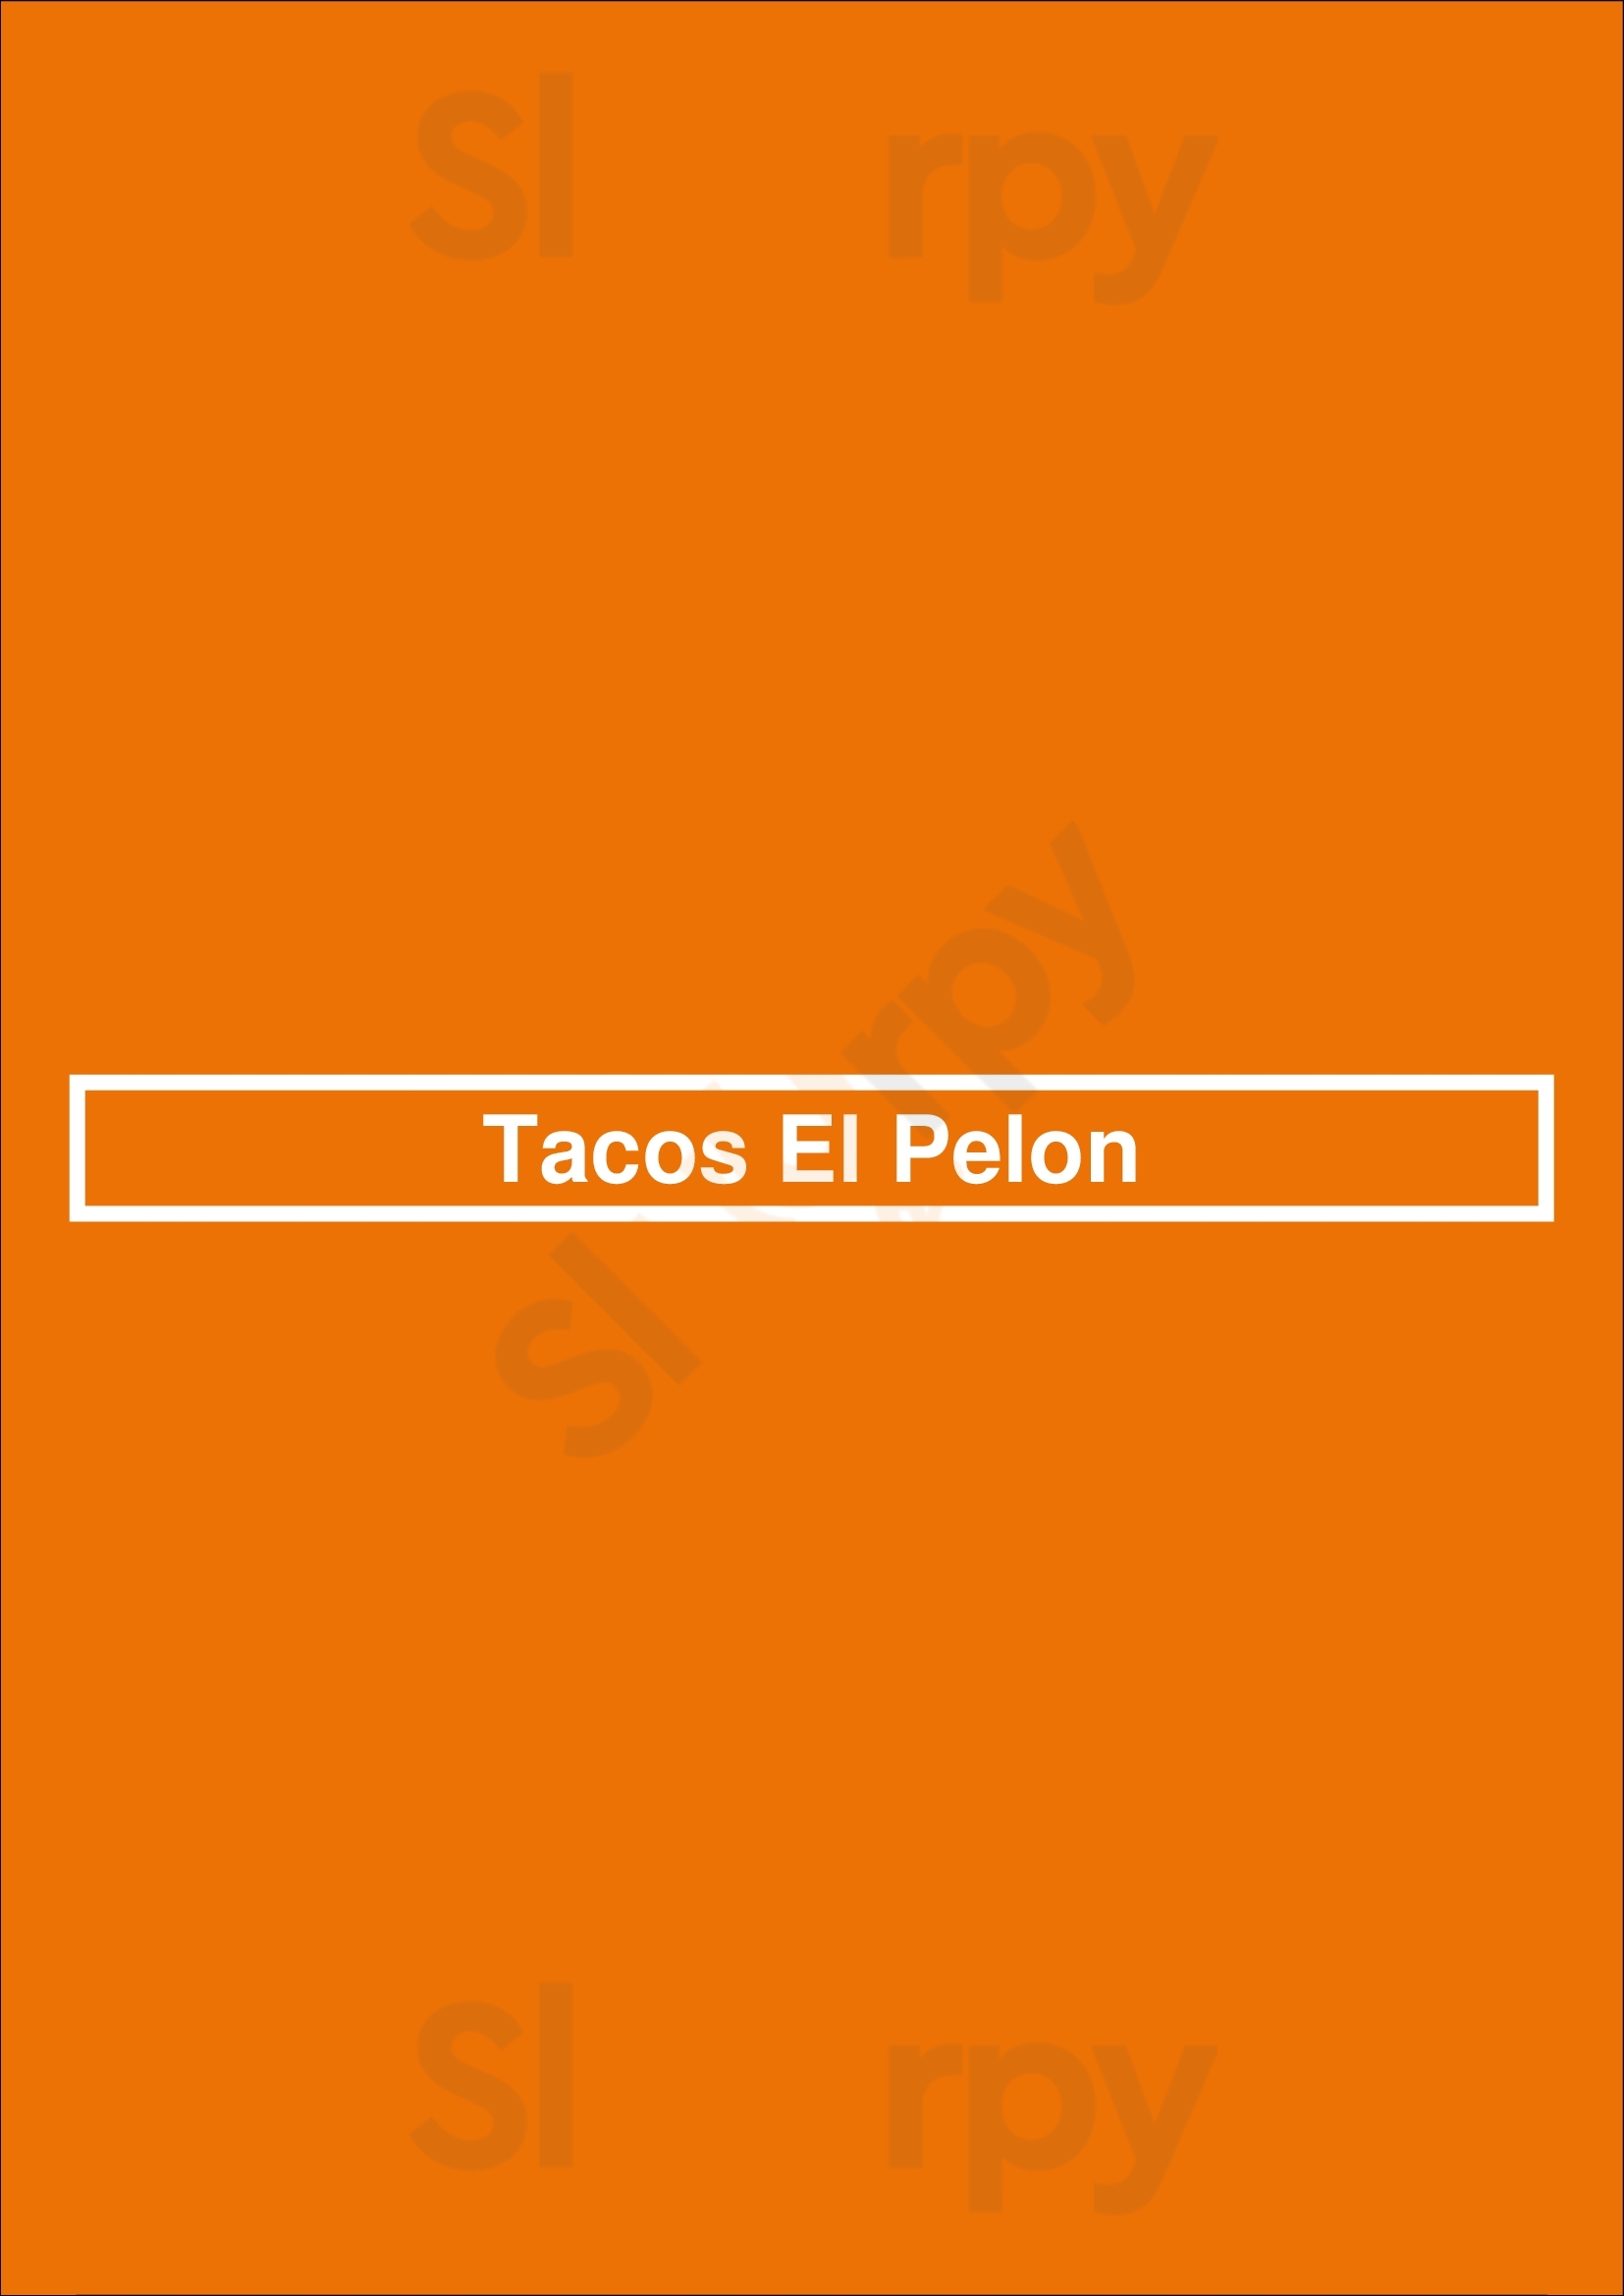 Tacos El Pelon San Jose Menu - 1